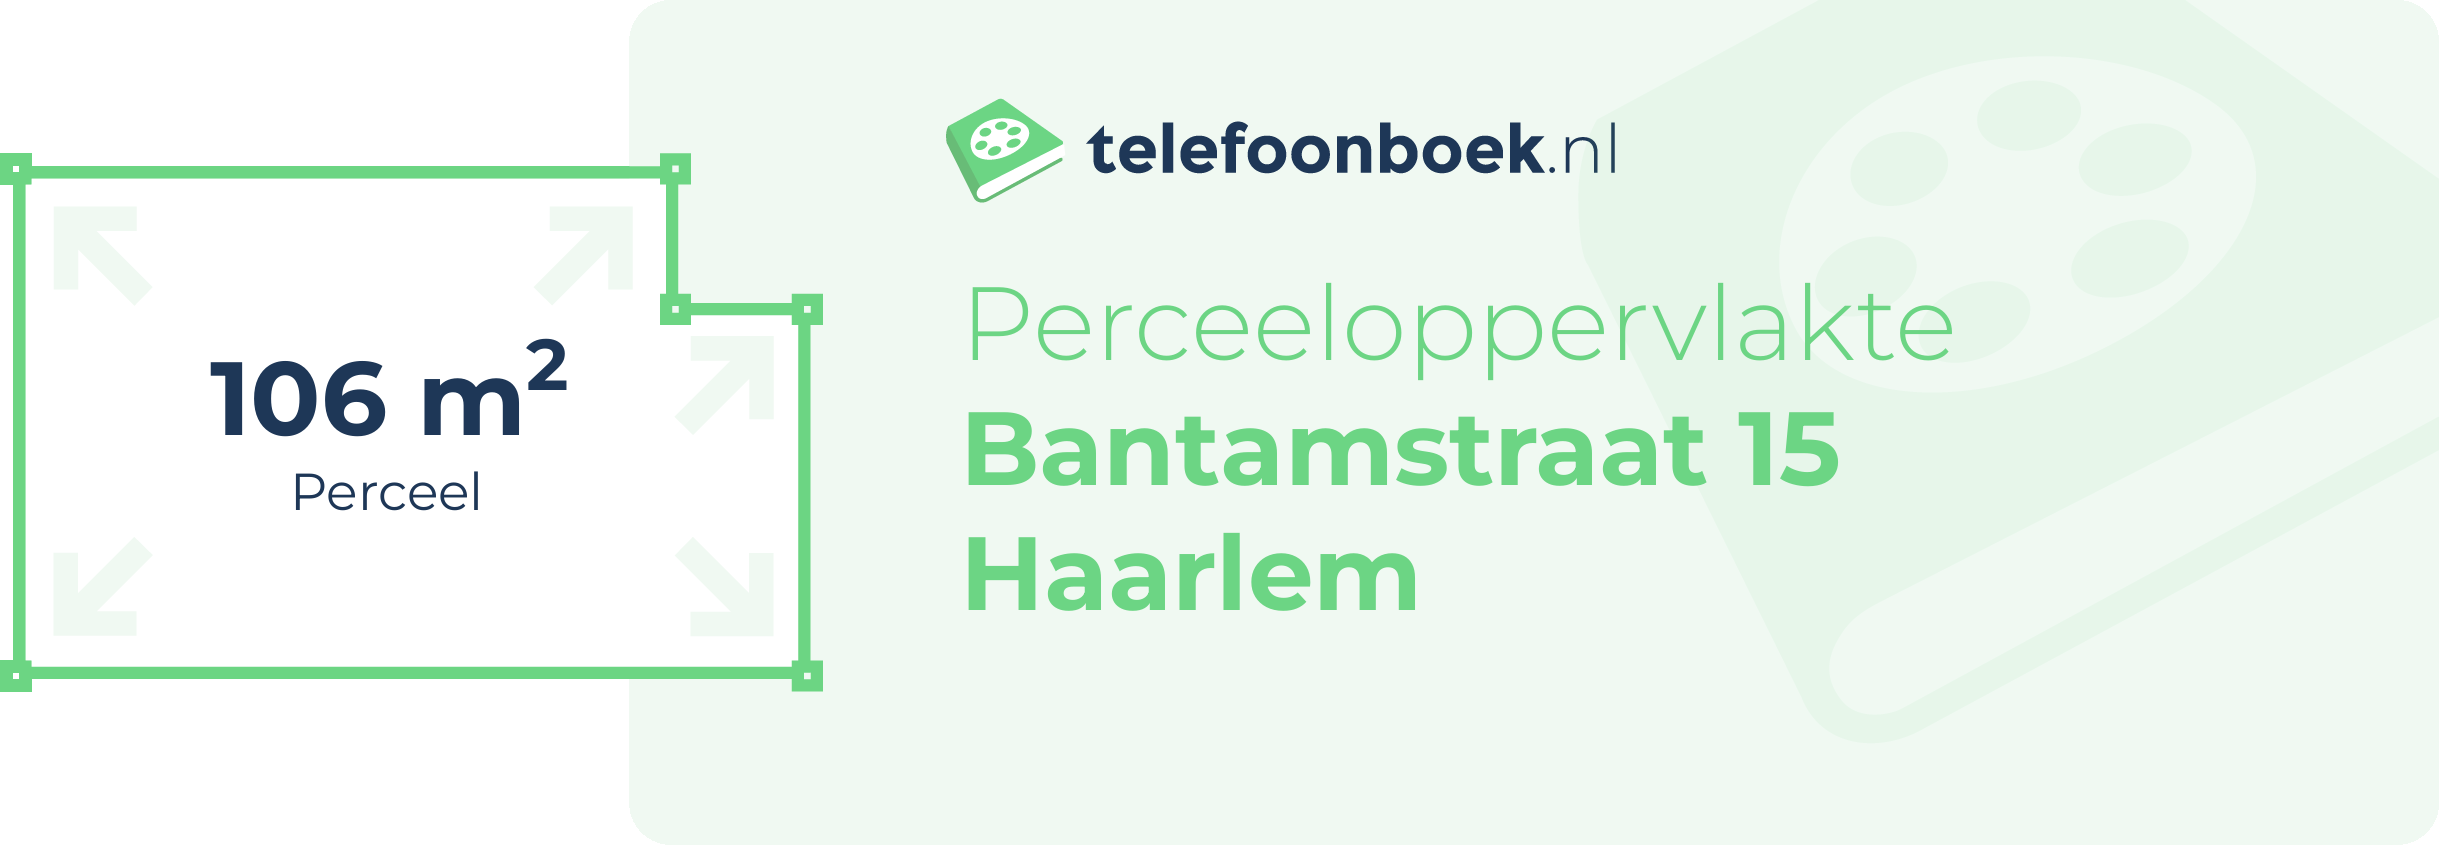 Perceeloppervlakte Bantamstraat 15 Haarlem